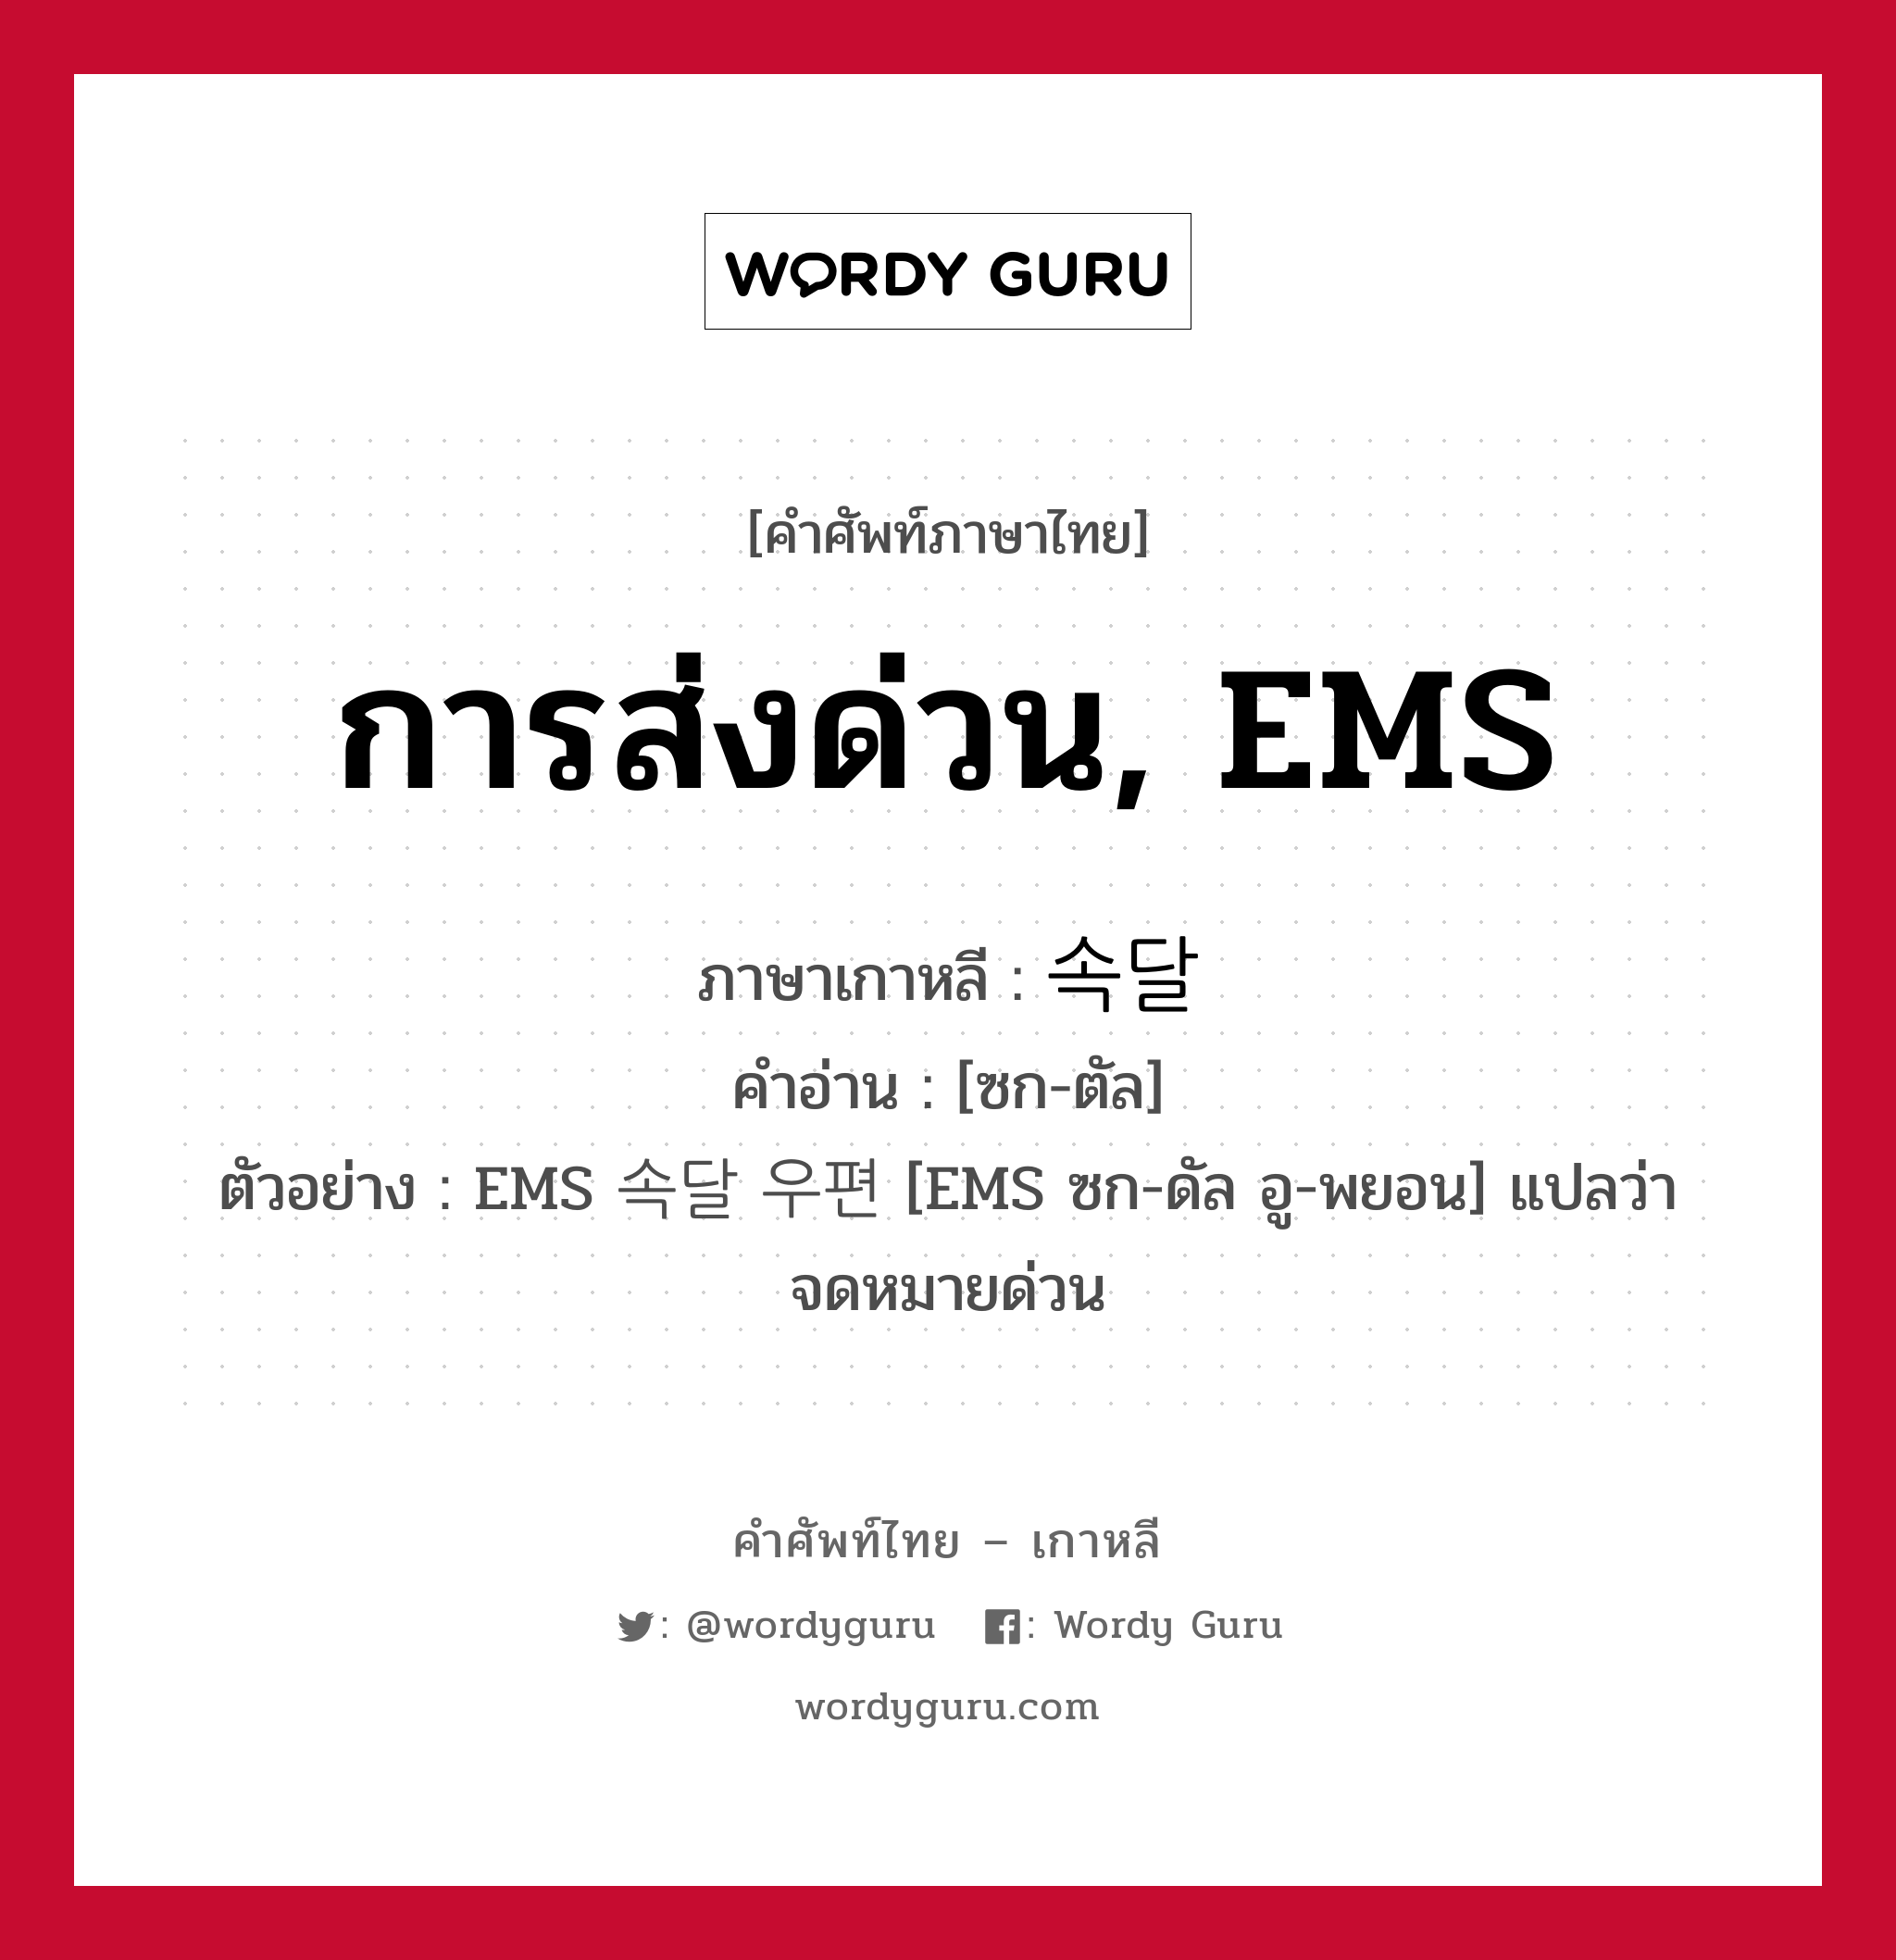 การส่งด่วน, EMS ภาษาเกาหลีคืออะไร, คำศัพท์ภาษาไทย - เกาหลี การส่งด่วน, EMS ภาษาเกาหลี 속달 คำอ่าน [ซก-ตัล] ตัวอย่าง EMS 속달 우편 [EMS ซก-ดัล อู-พยอน] แปลว่า จดหมายด่วน